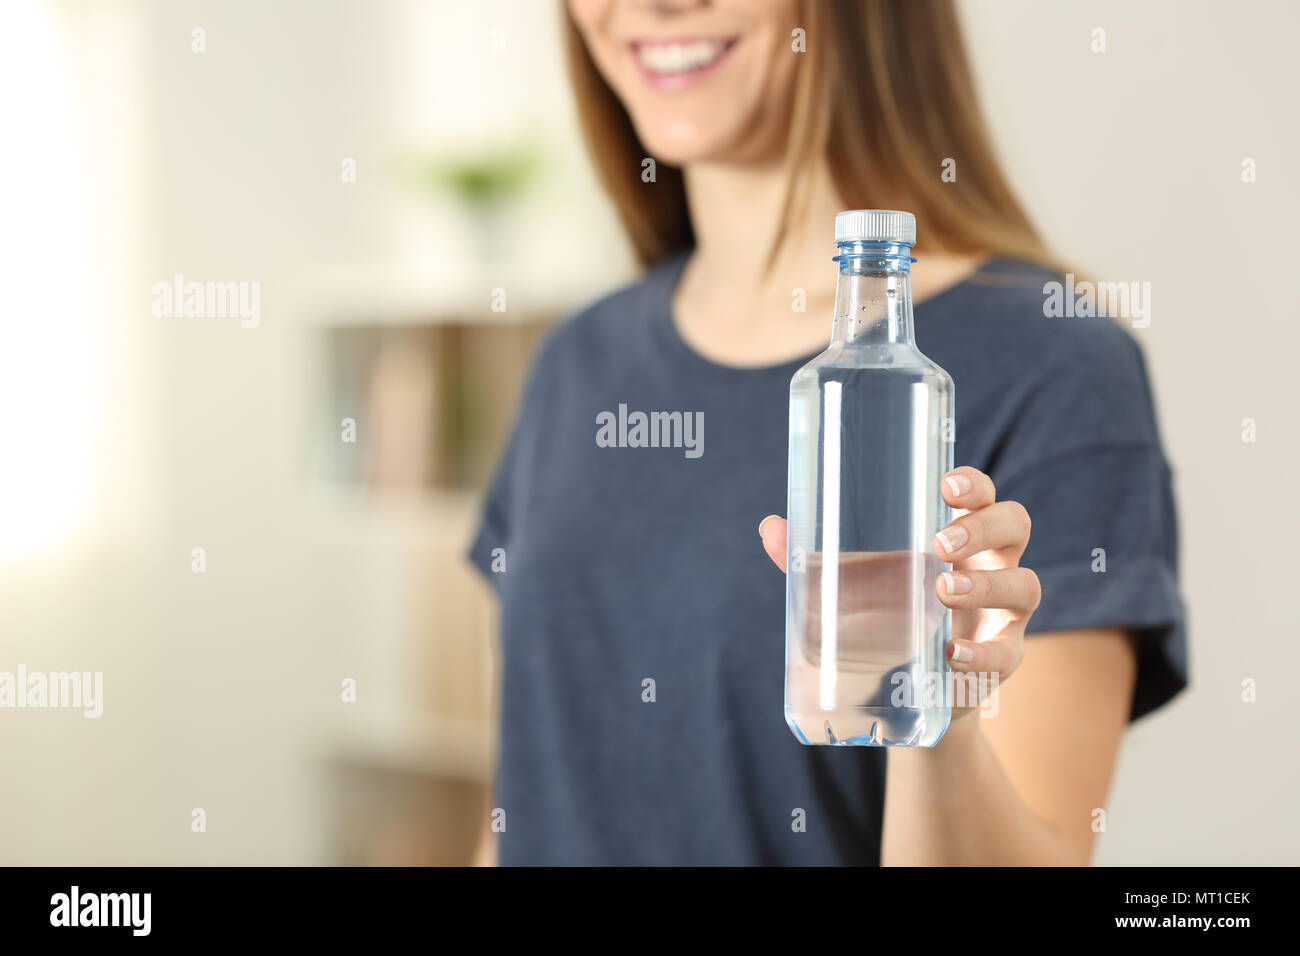 Бутылка воды в руке. Стеклянная бутылка в руке. Девушка держит в руках бутылку. Девушка держит бутылку воды.